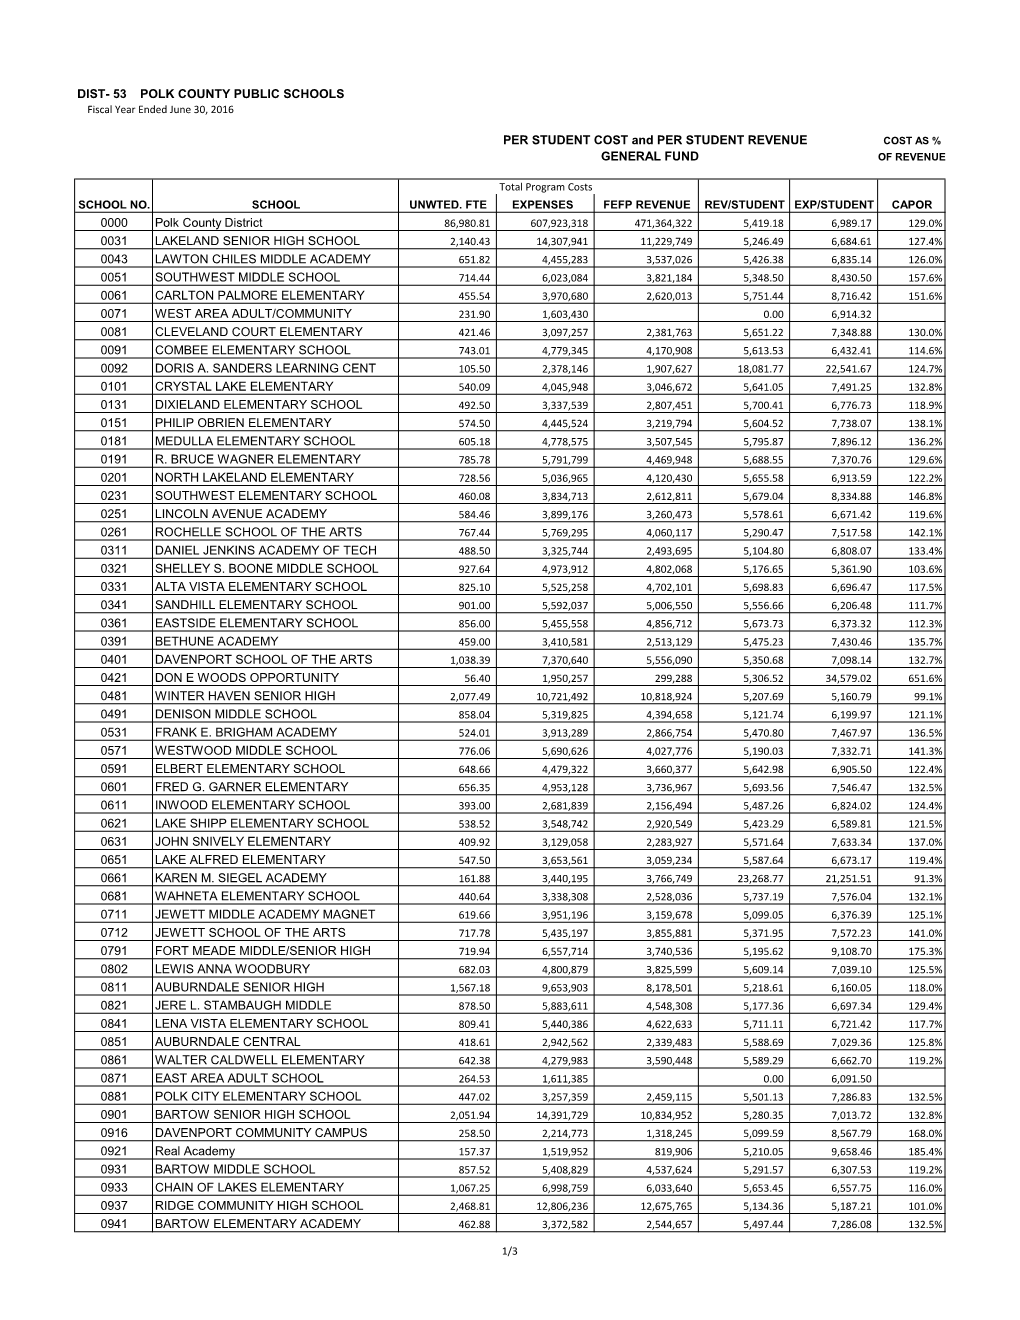 Dist- 53 Polk County Public Schools Per Student Cost